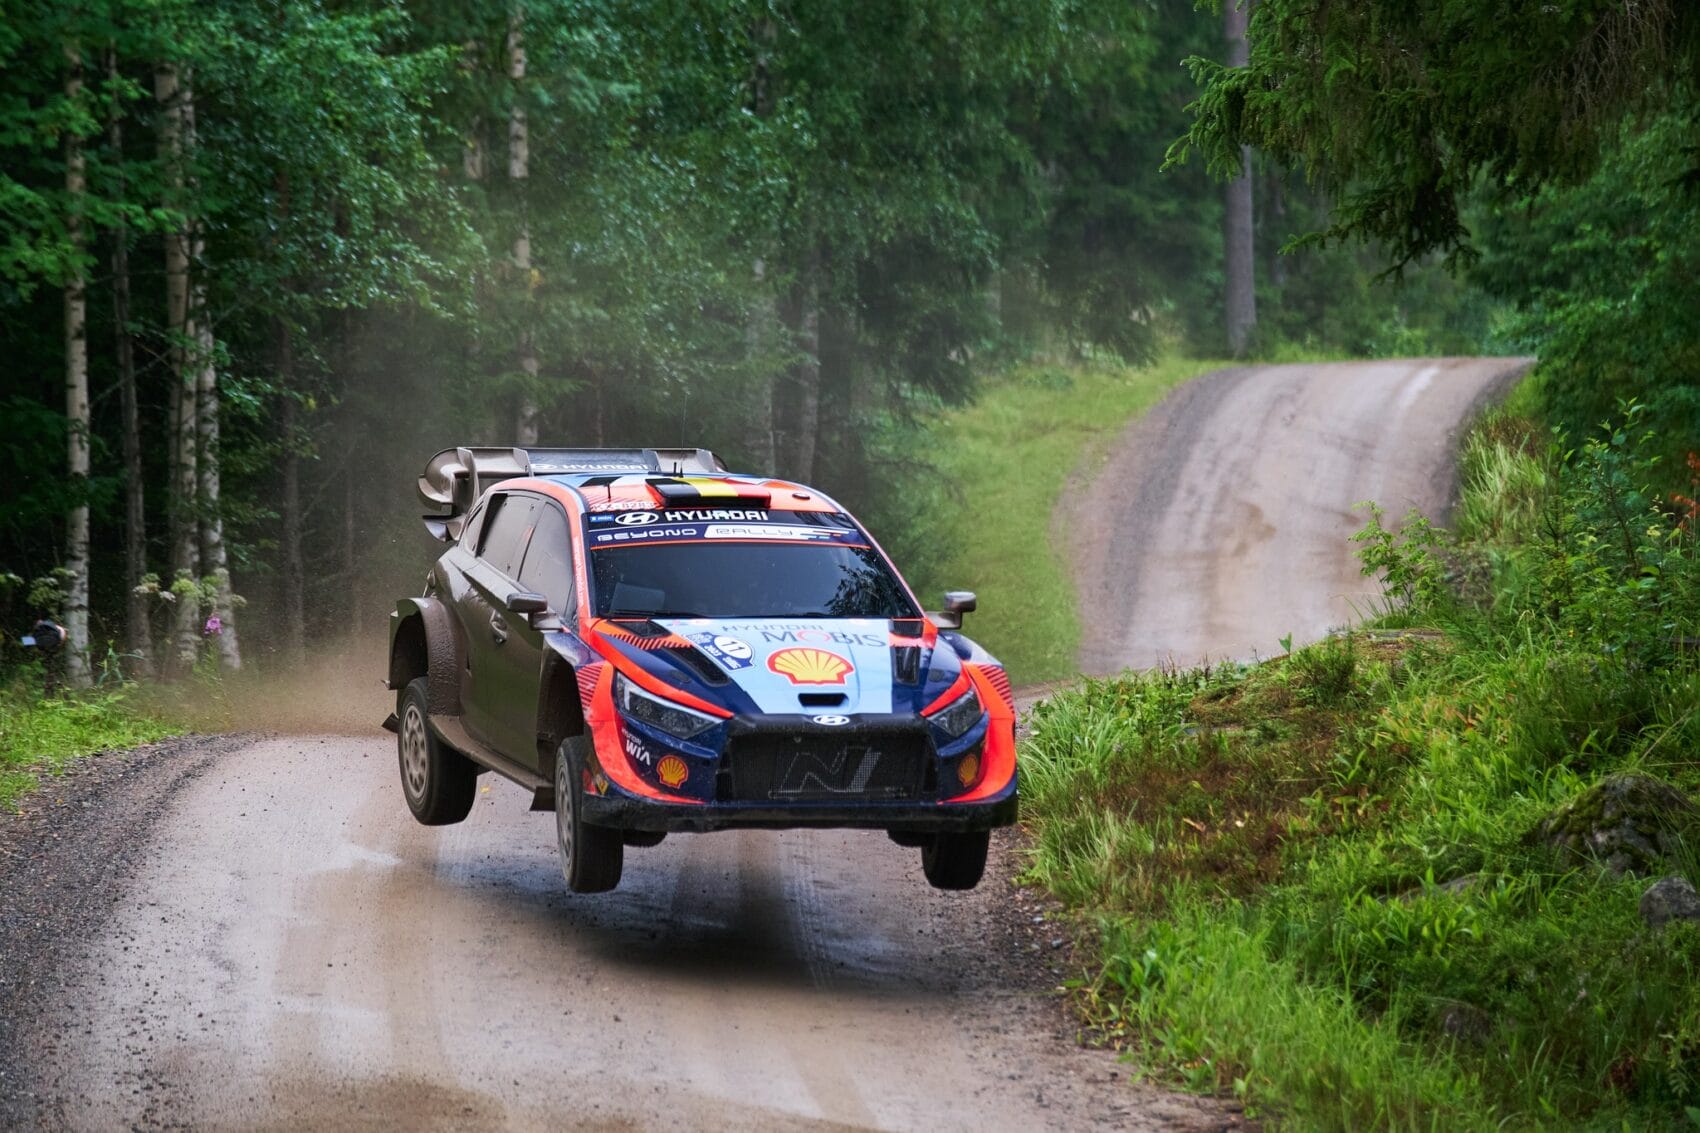 A Hyundai döntése: visszavonulás a Litván Rallyról